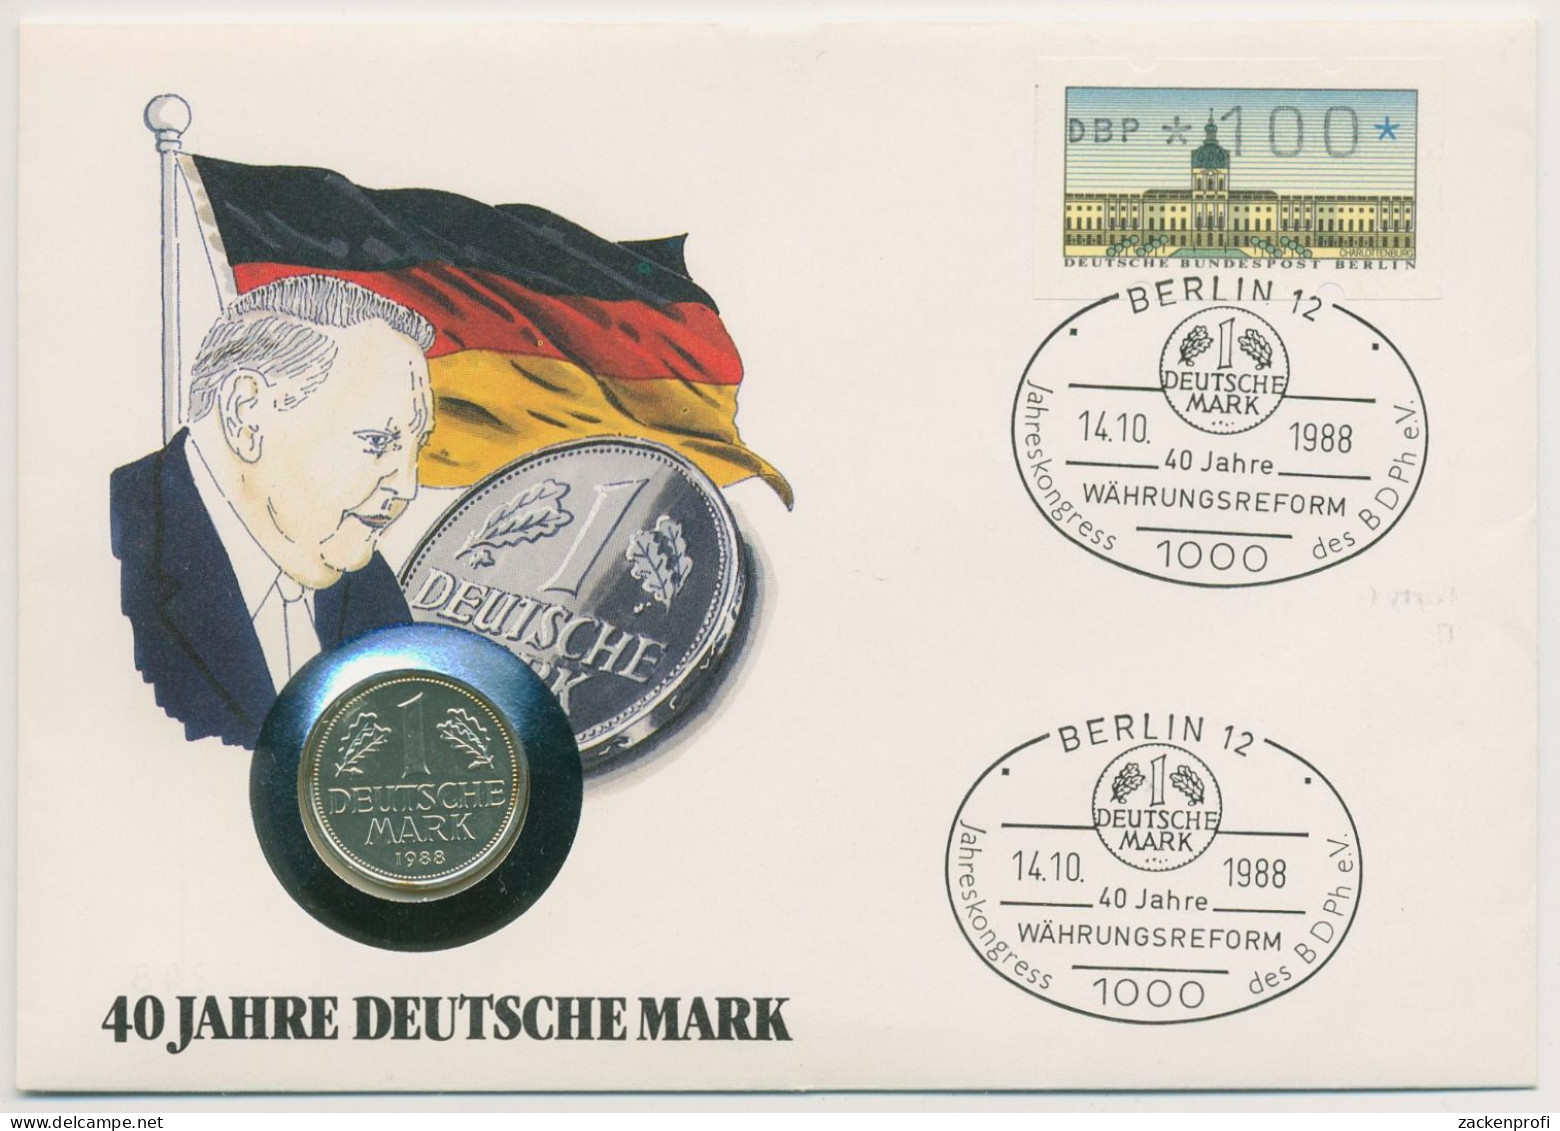 Berlin 1988 Deutsche Mark Numisbrief 1 DM Versilbert (N716) - Briefe U. Dokumente